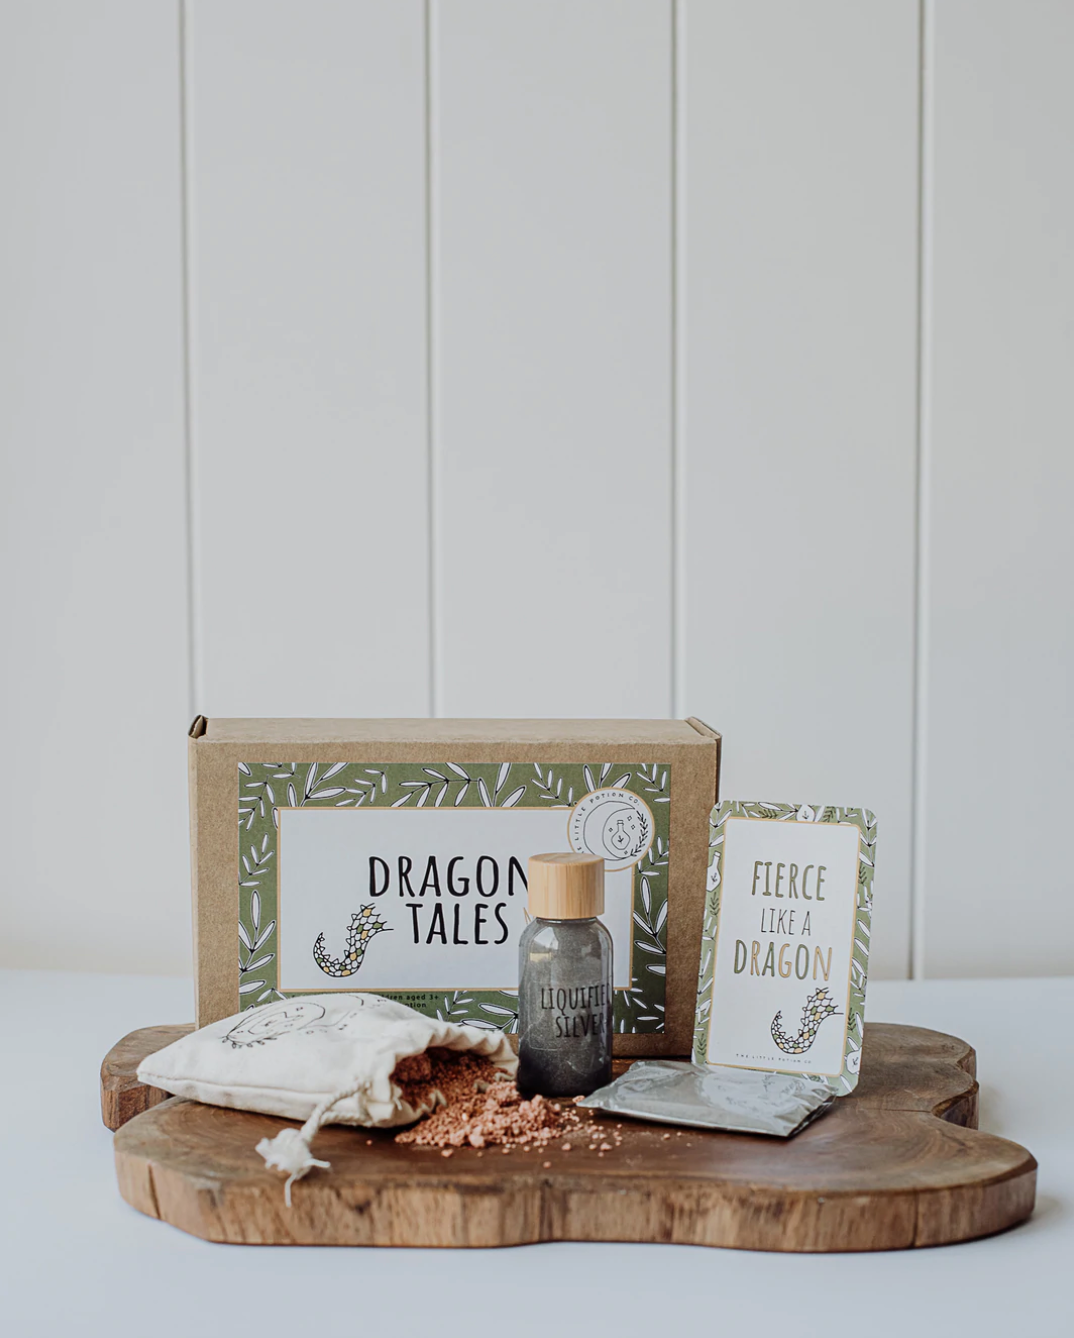 Dragon Tales Mini Potion Kit